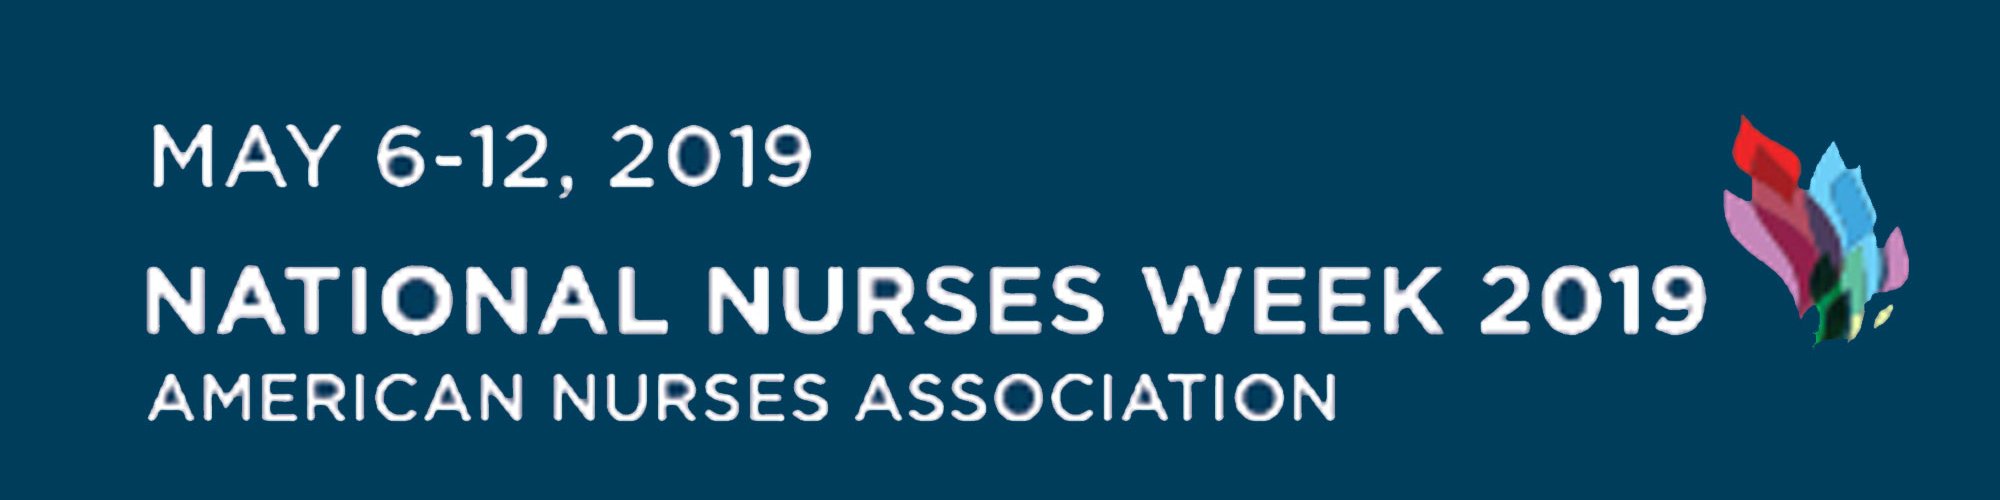 Nurses Week May 6-12